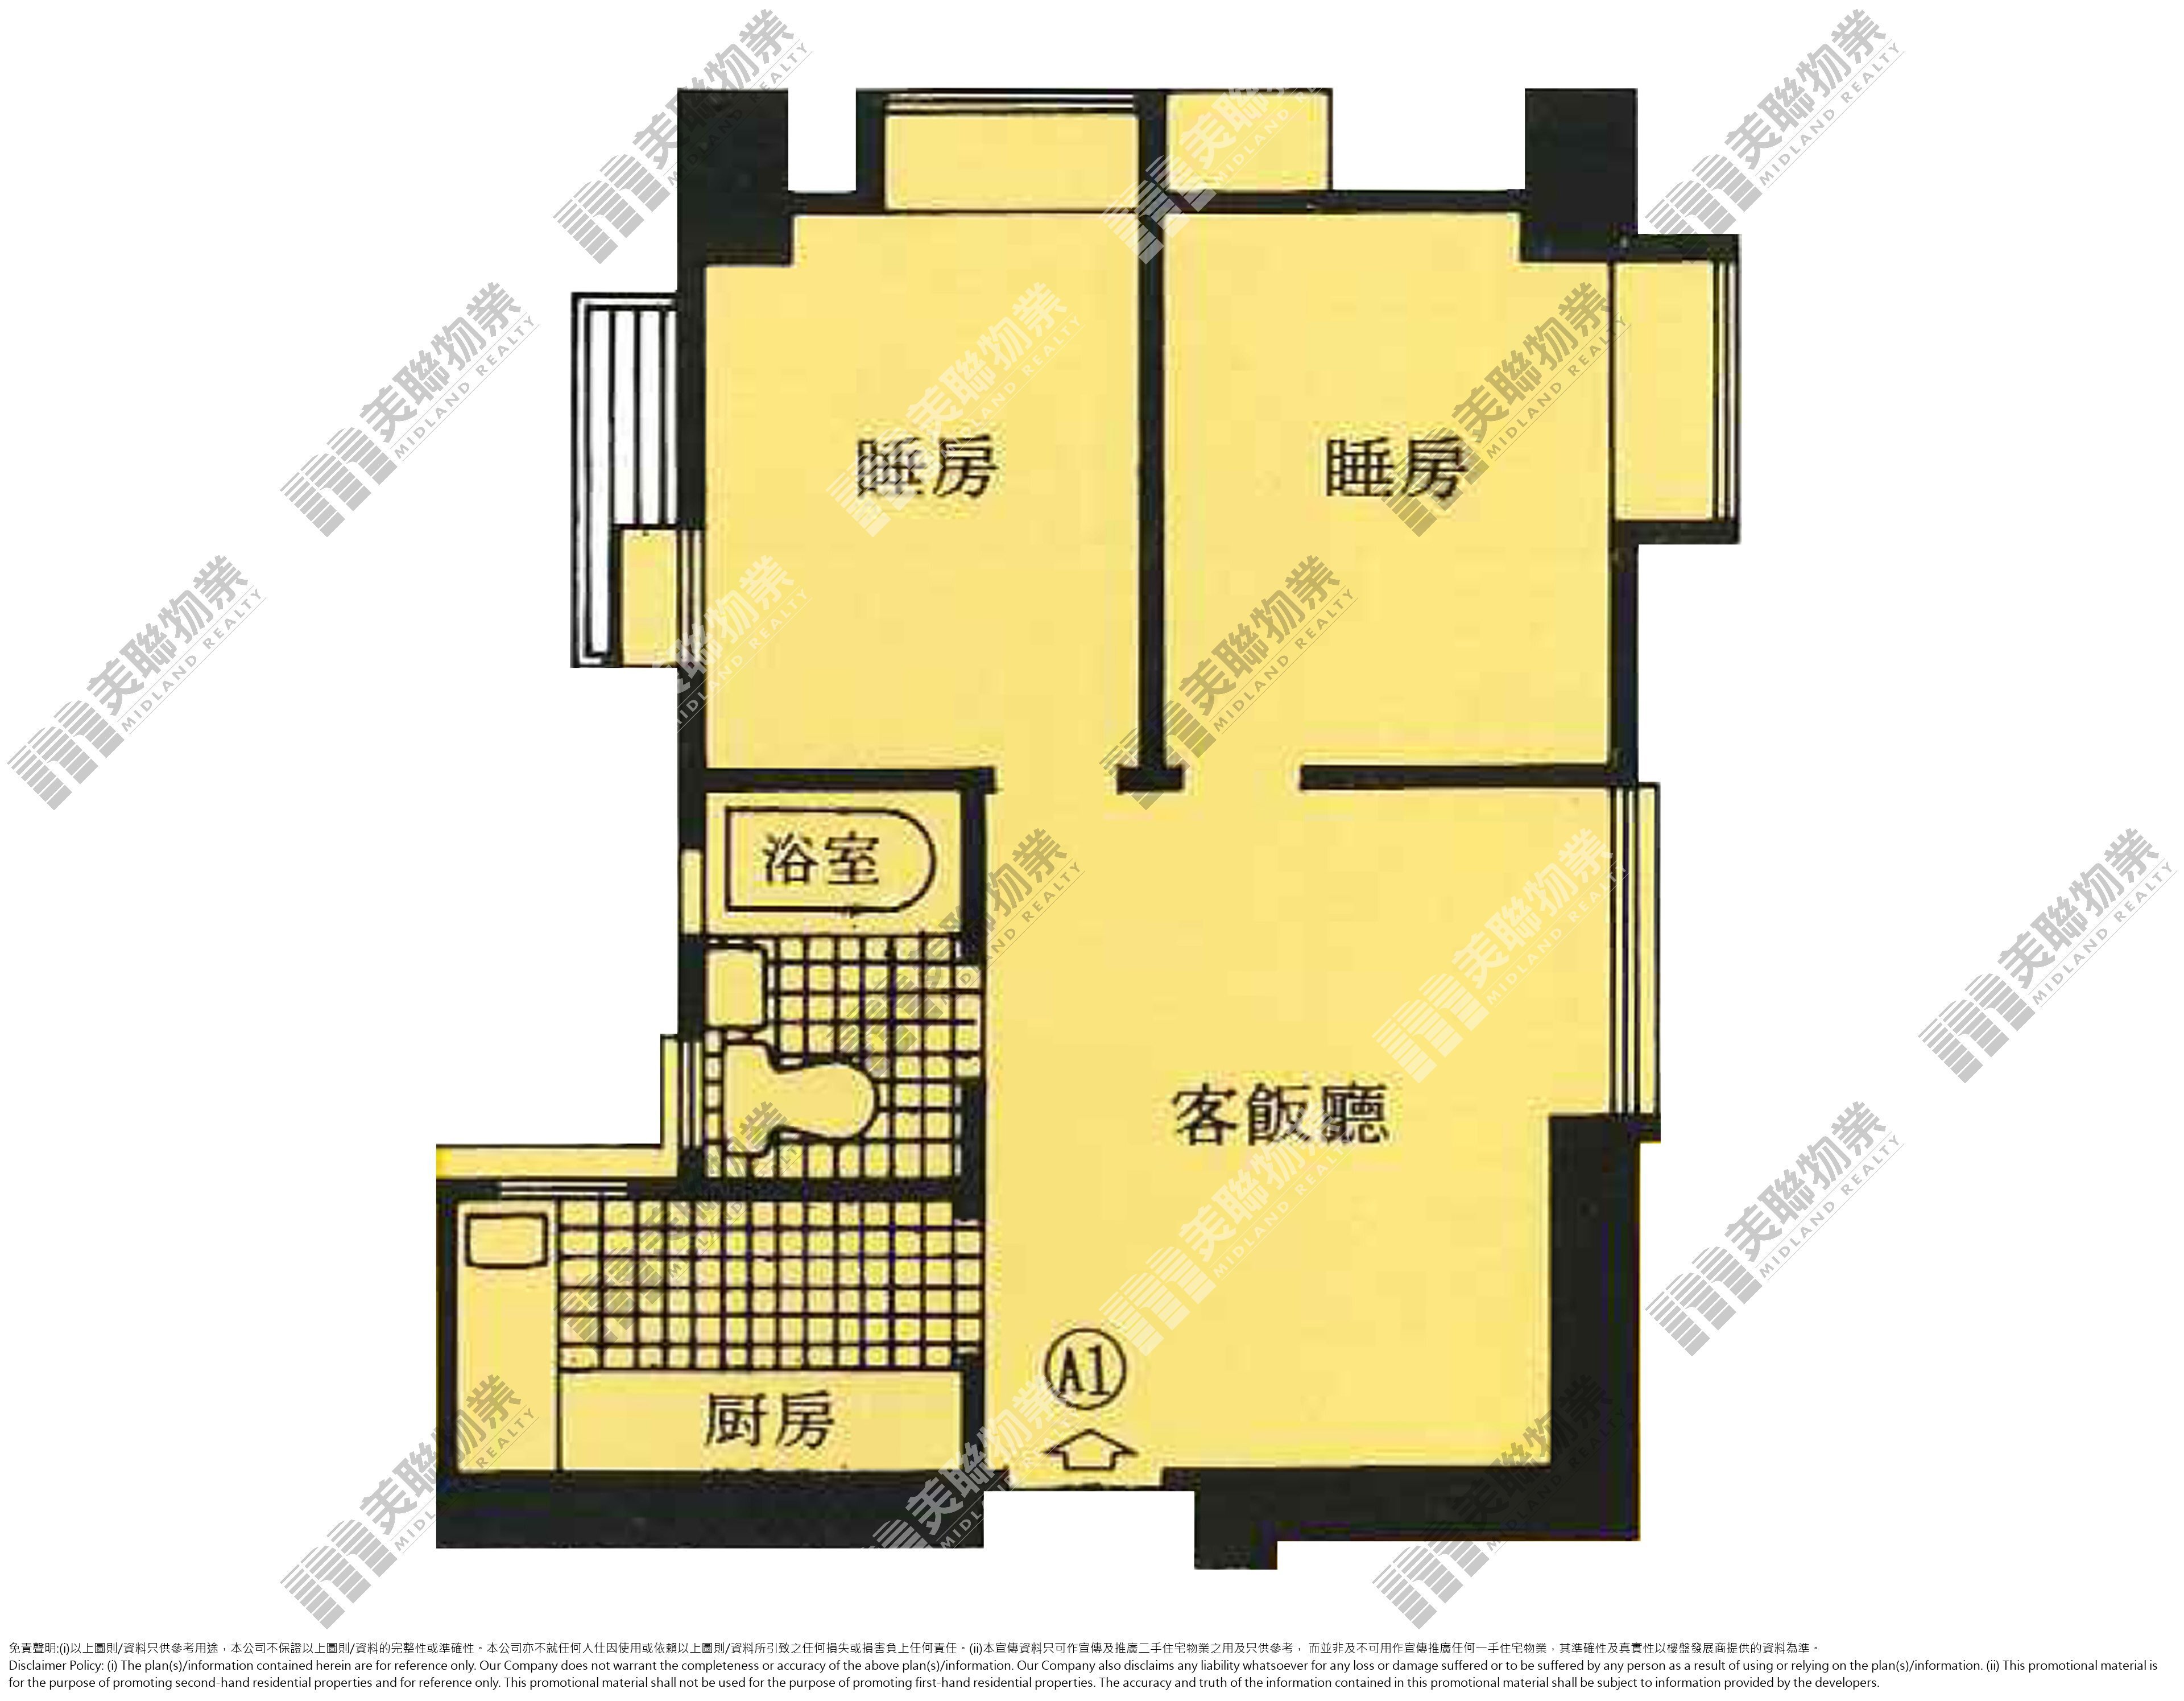 屯門-翠林花園-A座高層1室(I20201200625) | 樓市成交| 美聯物業Midland Realty